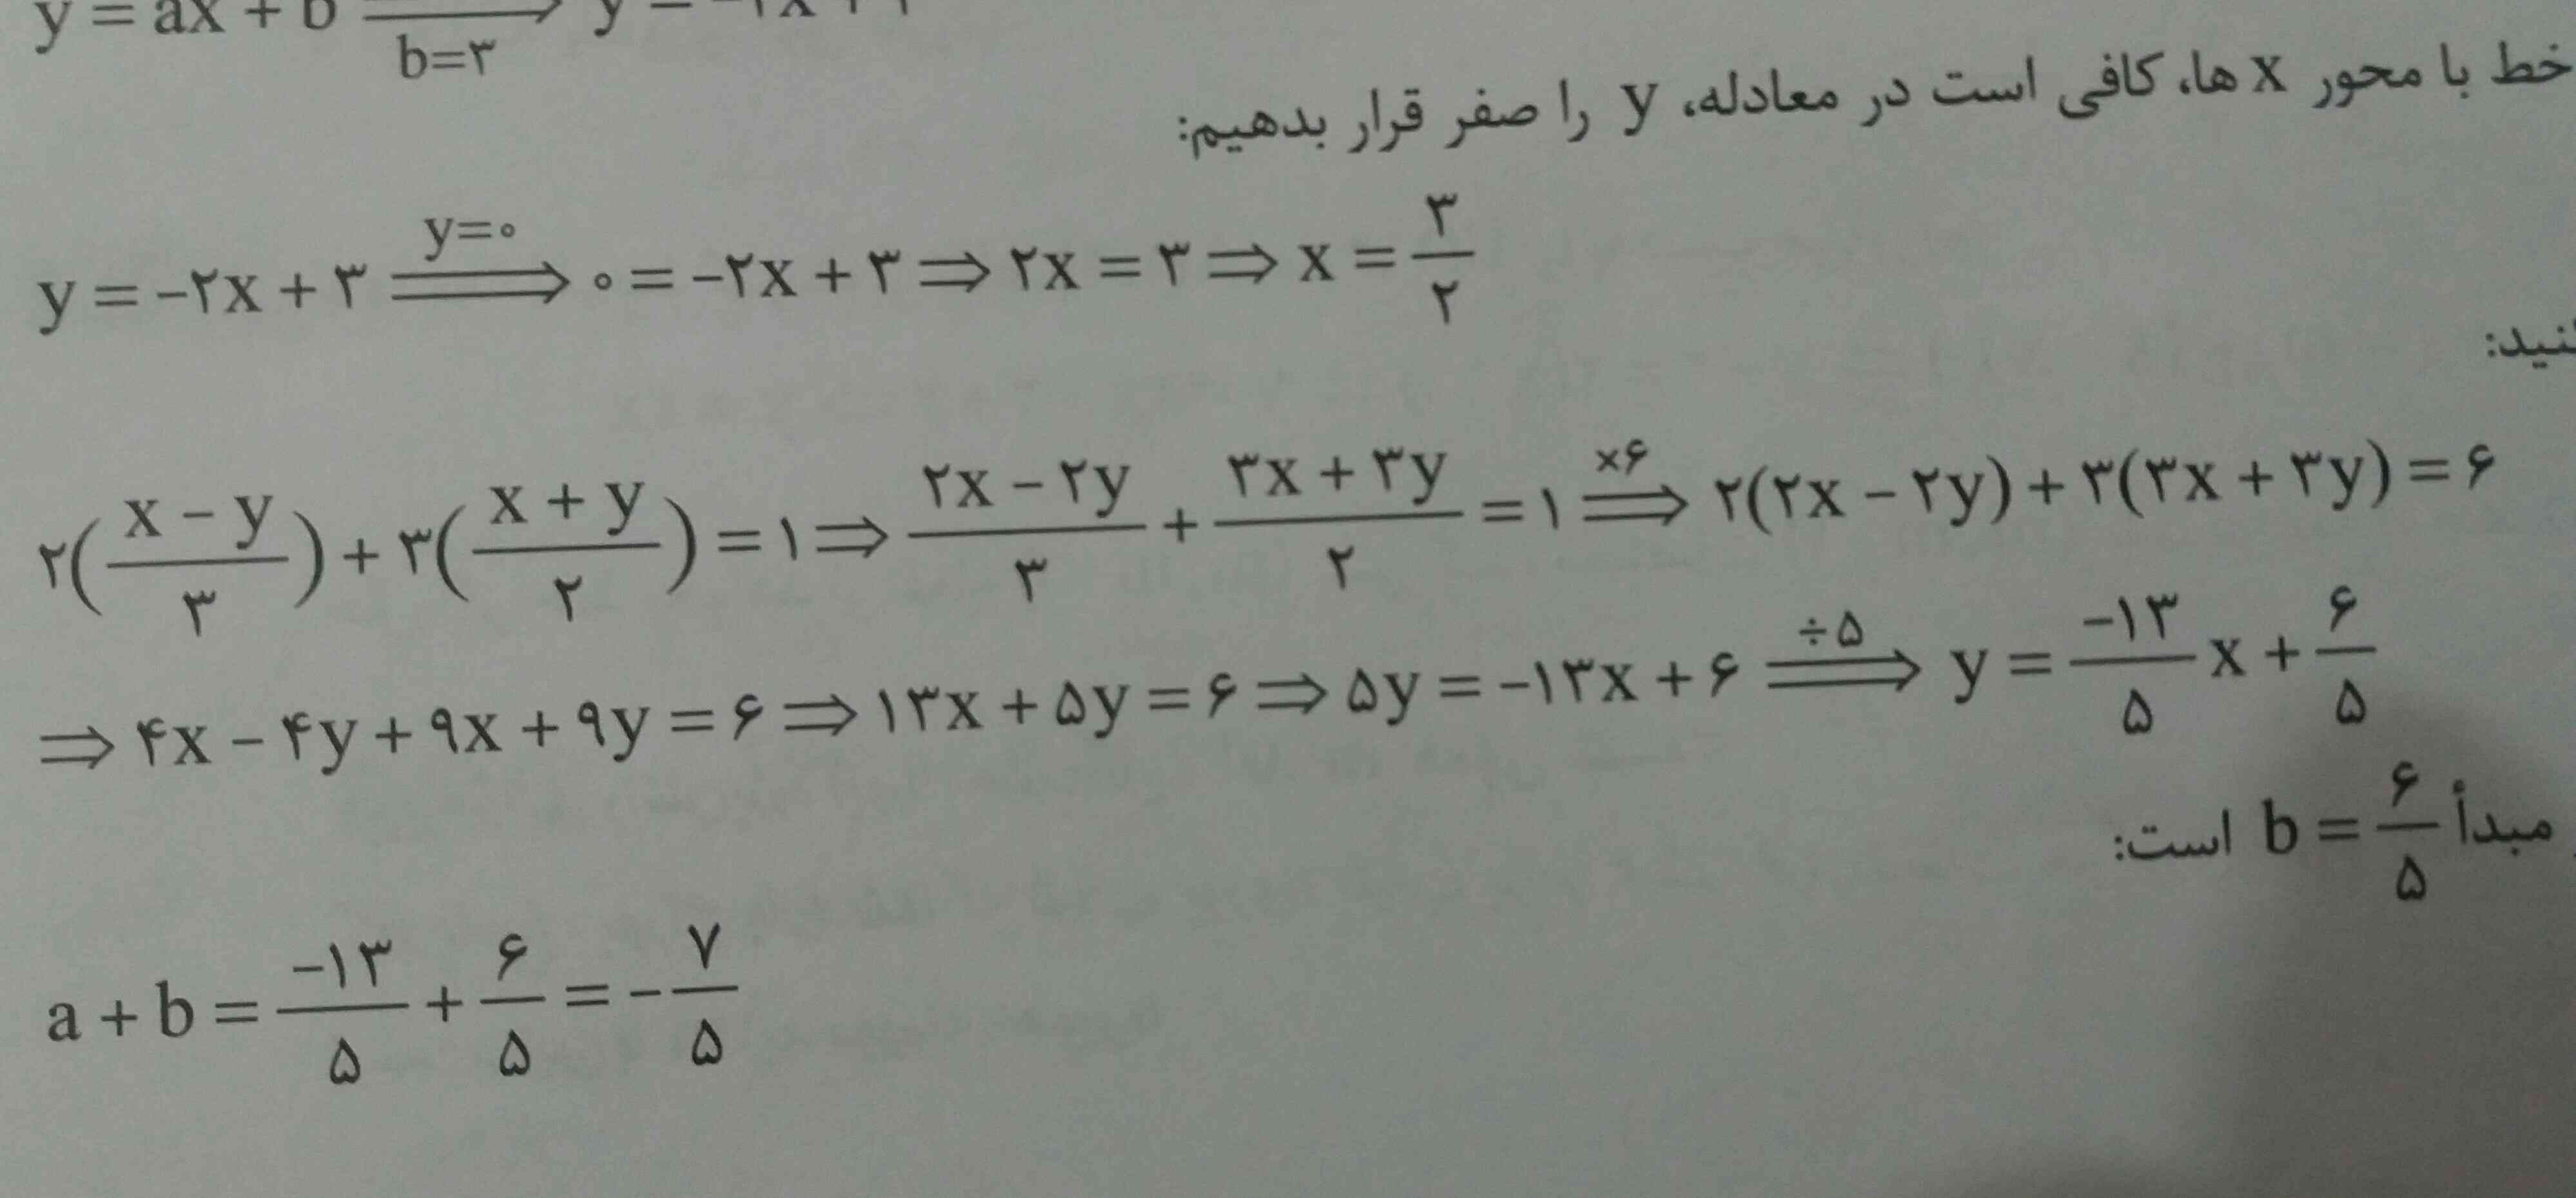 لطفا کسی جواب بده این جا که برای ساده کردن ۶×میکنه روتوضیح بدین